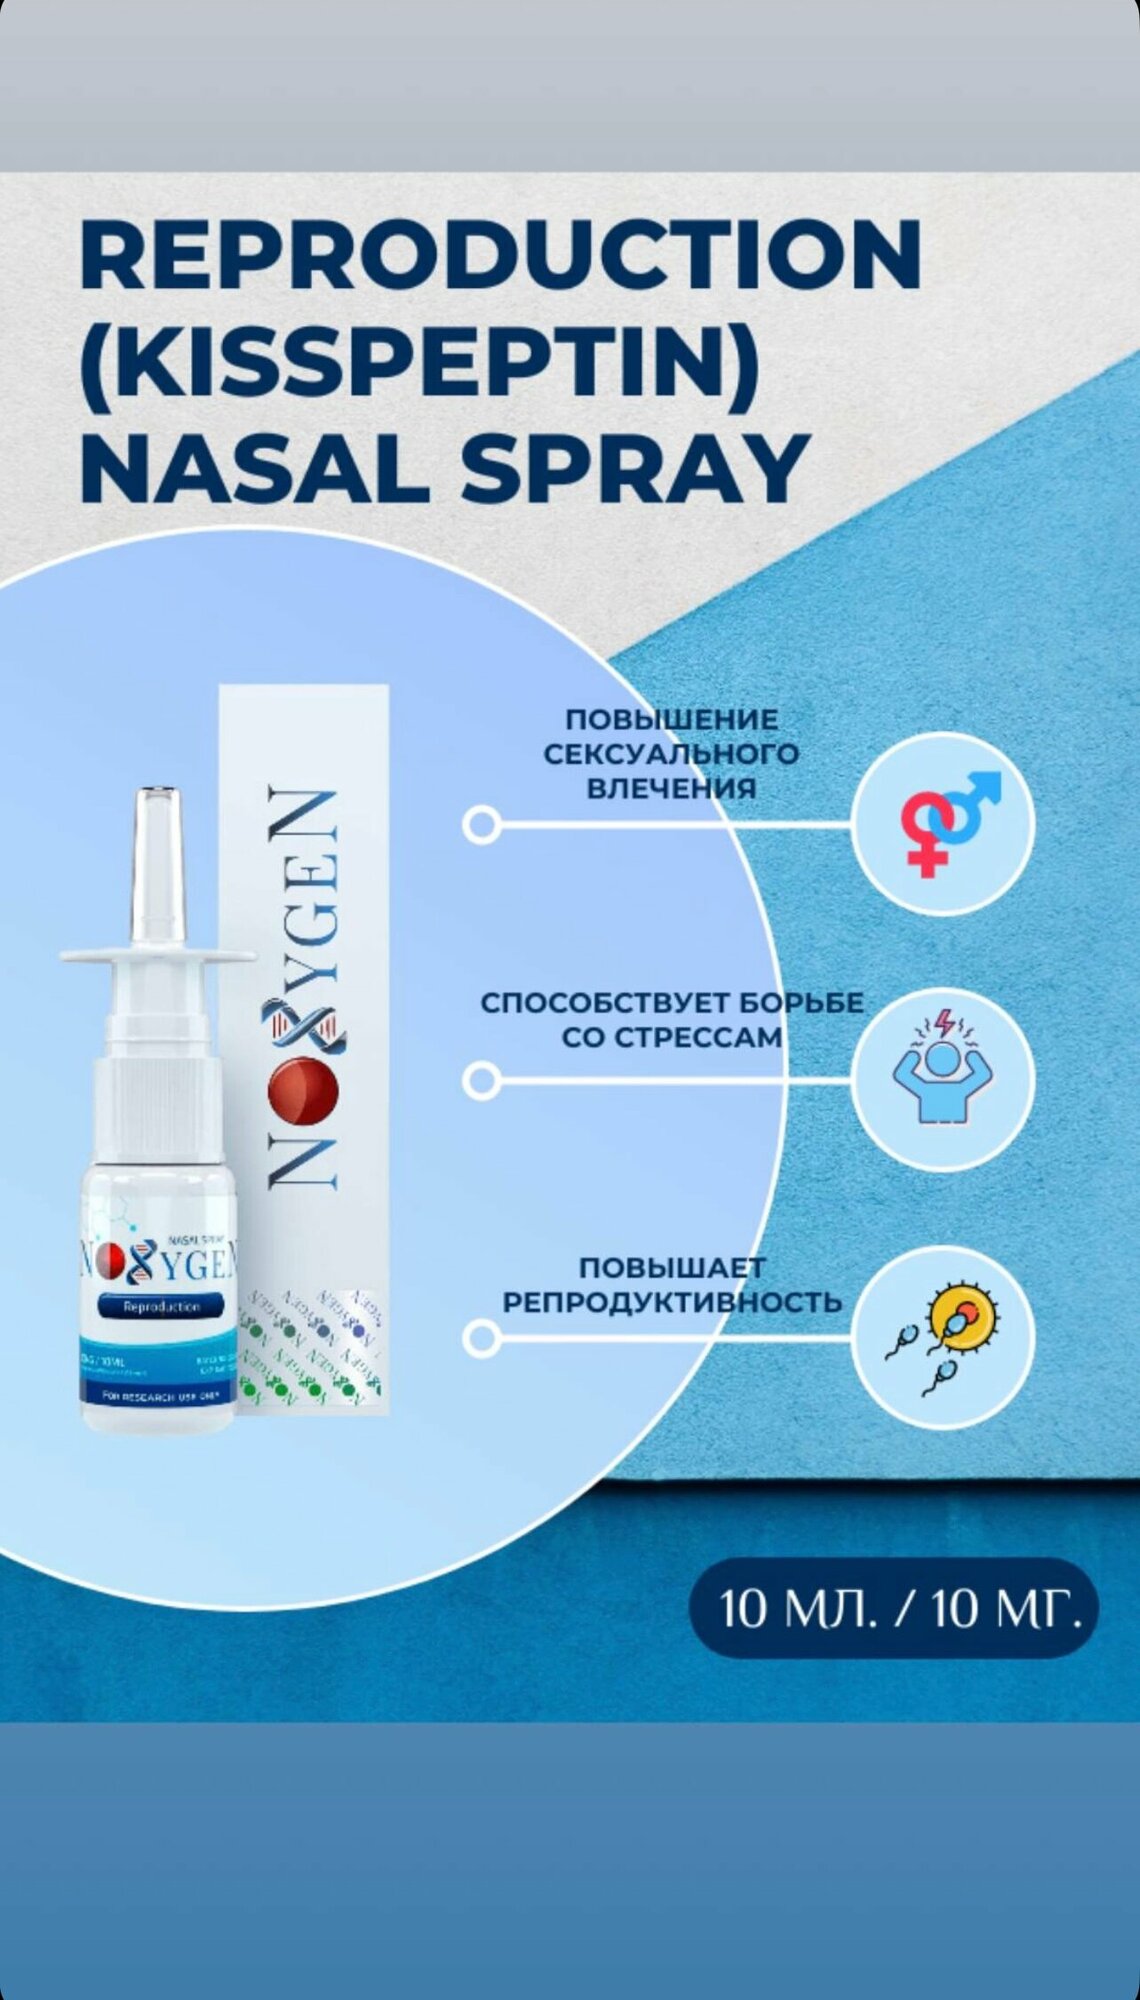 Noxygen Reproduction 10mg/10ml Nasal Spray для поддержки всего организма, улучшения обмена веществ